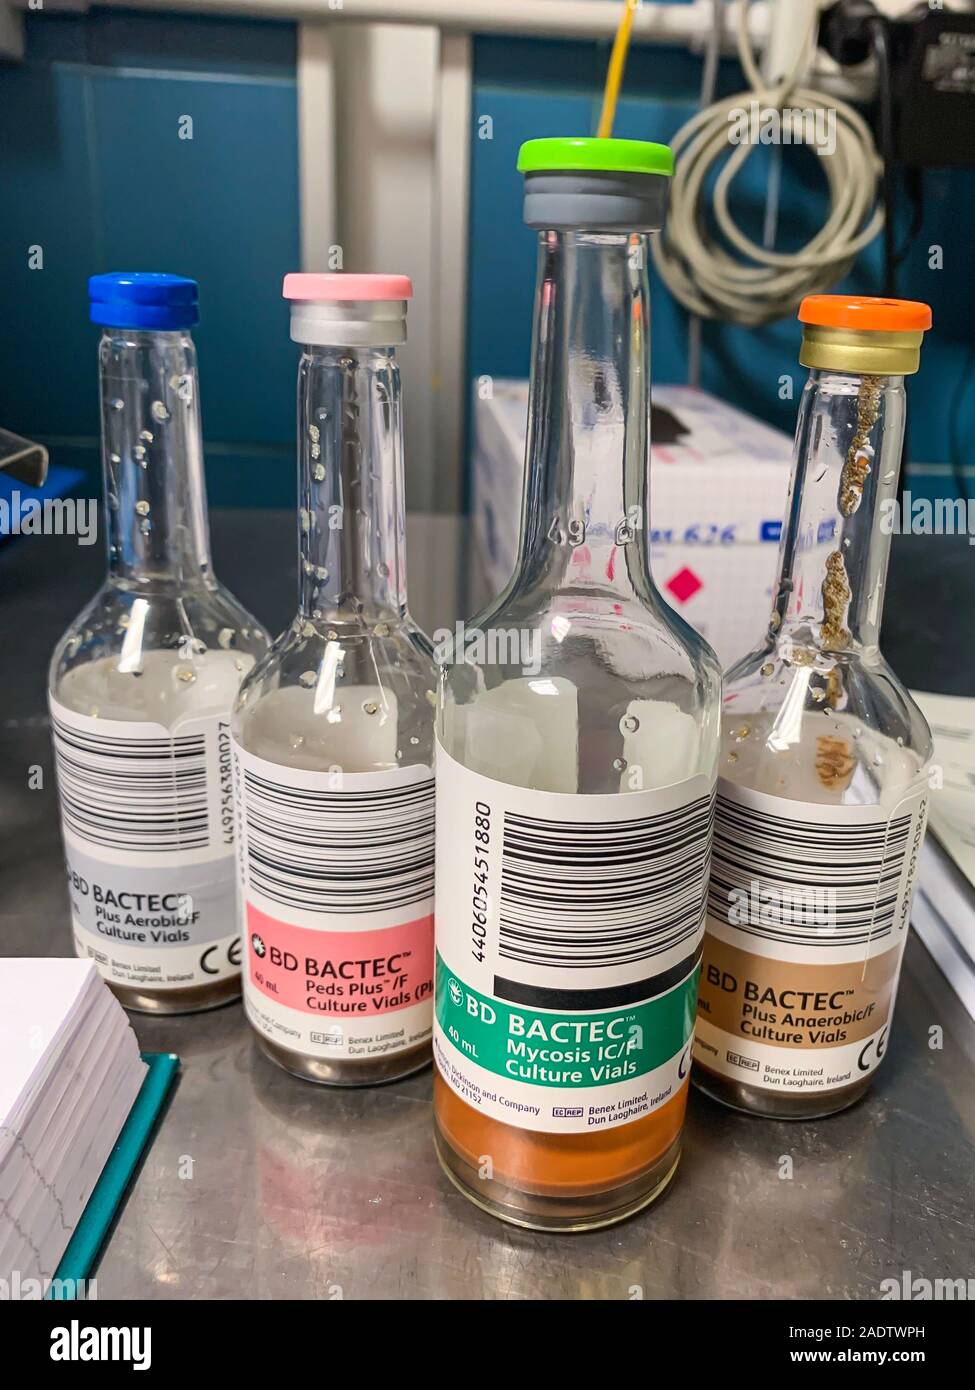 Parma, Italien - 5. Dezember 2019: Verschiedene Fläschchen für bakterielle Kultur und Pilz durchstechflaschen von bd bactec in einem mikrobiologischen Labor Stockfoto